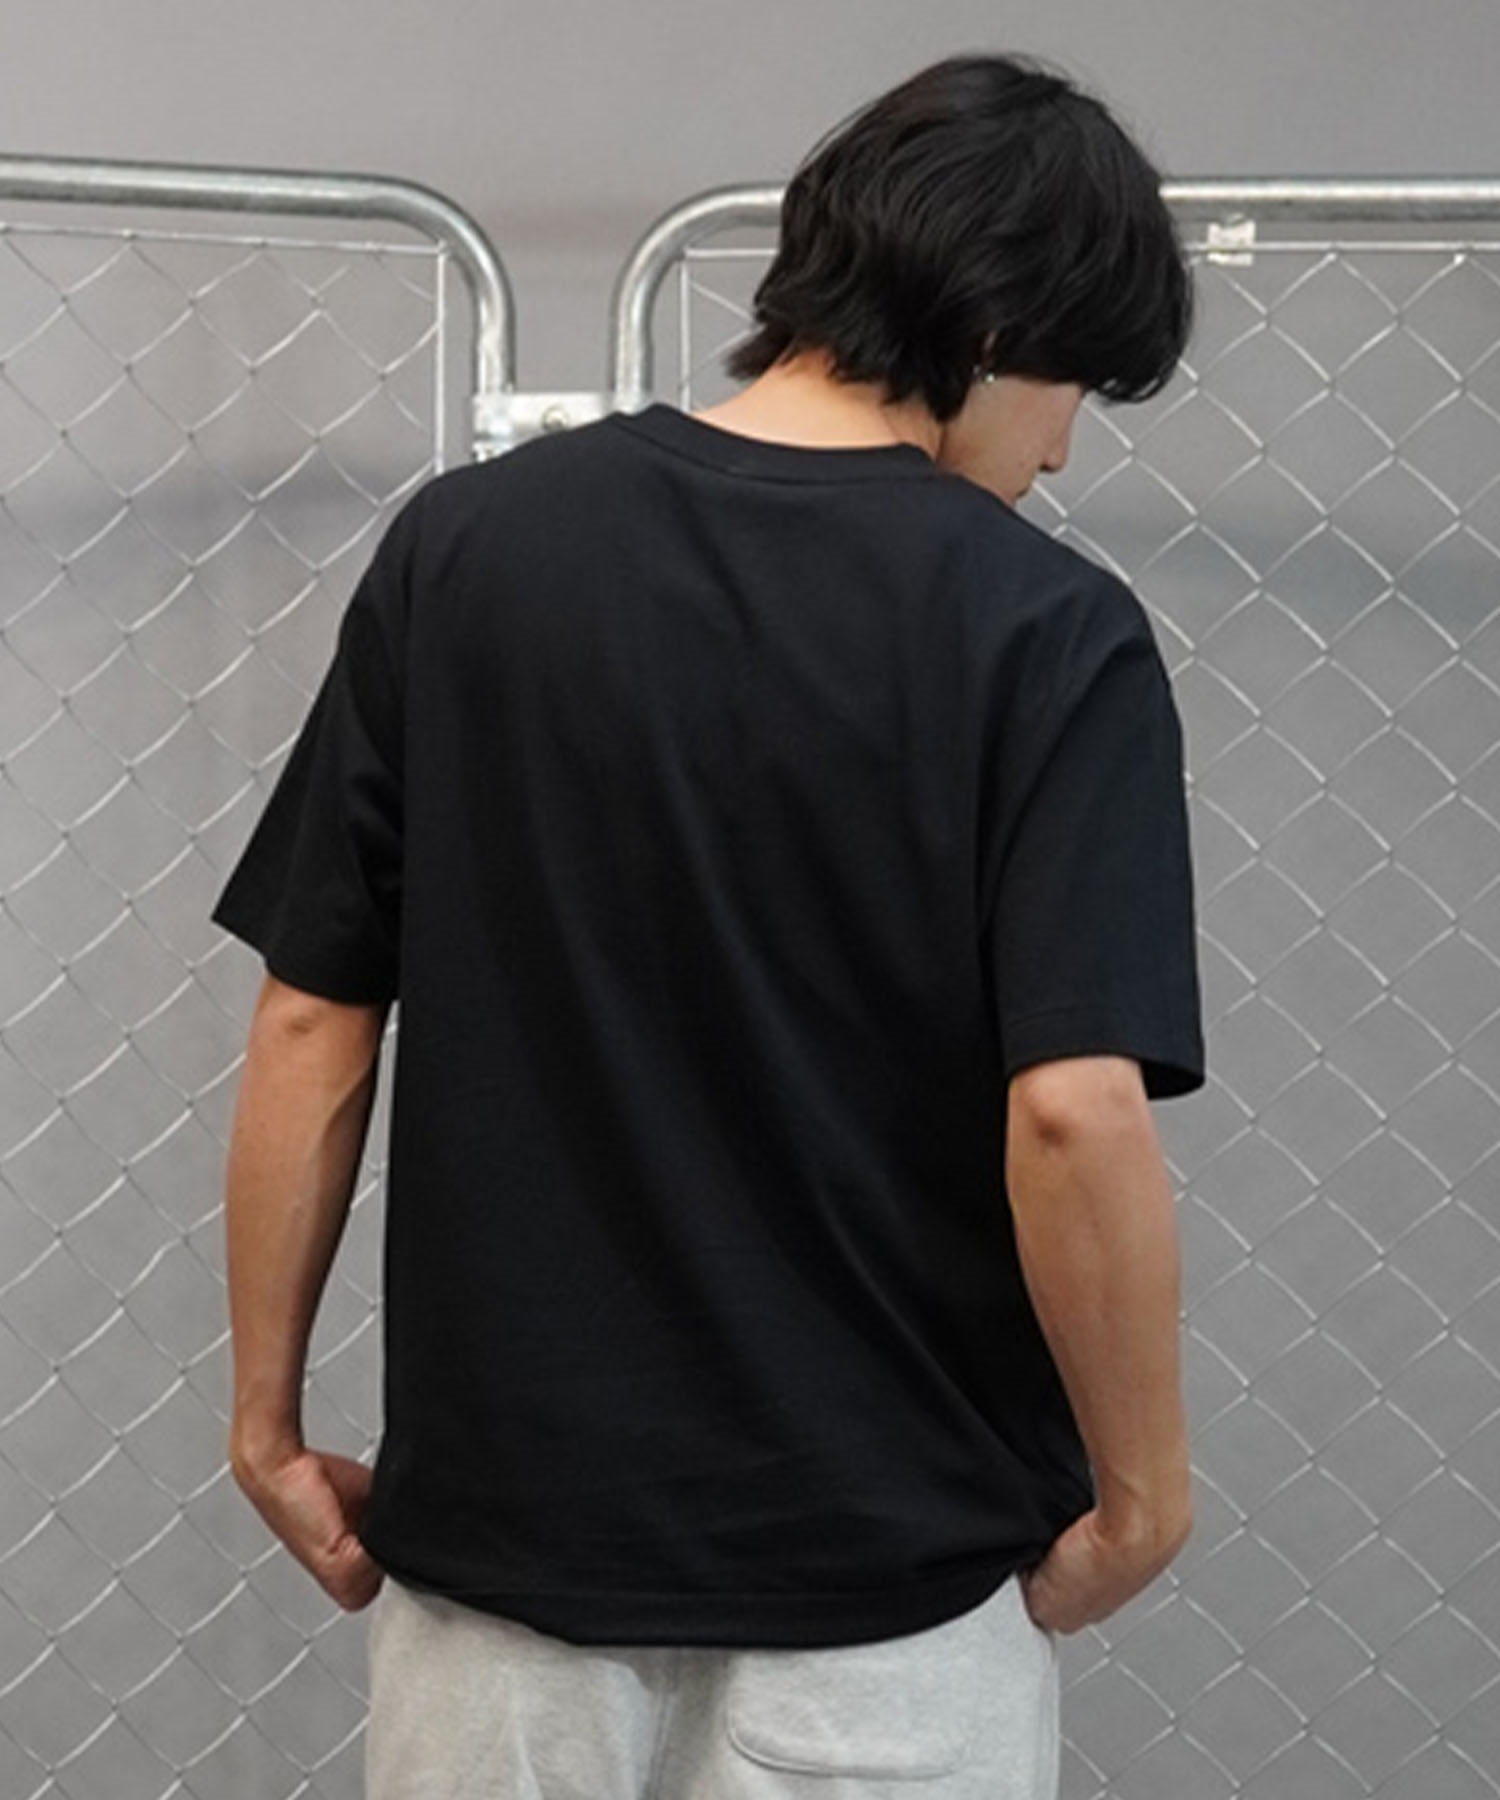 【マトメガイ対象】new balance ニューバランス メンズ 半袖Tシャツ ワンポイント ブランドロゴ MT41908(BK-M)